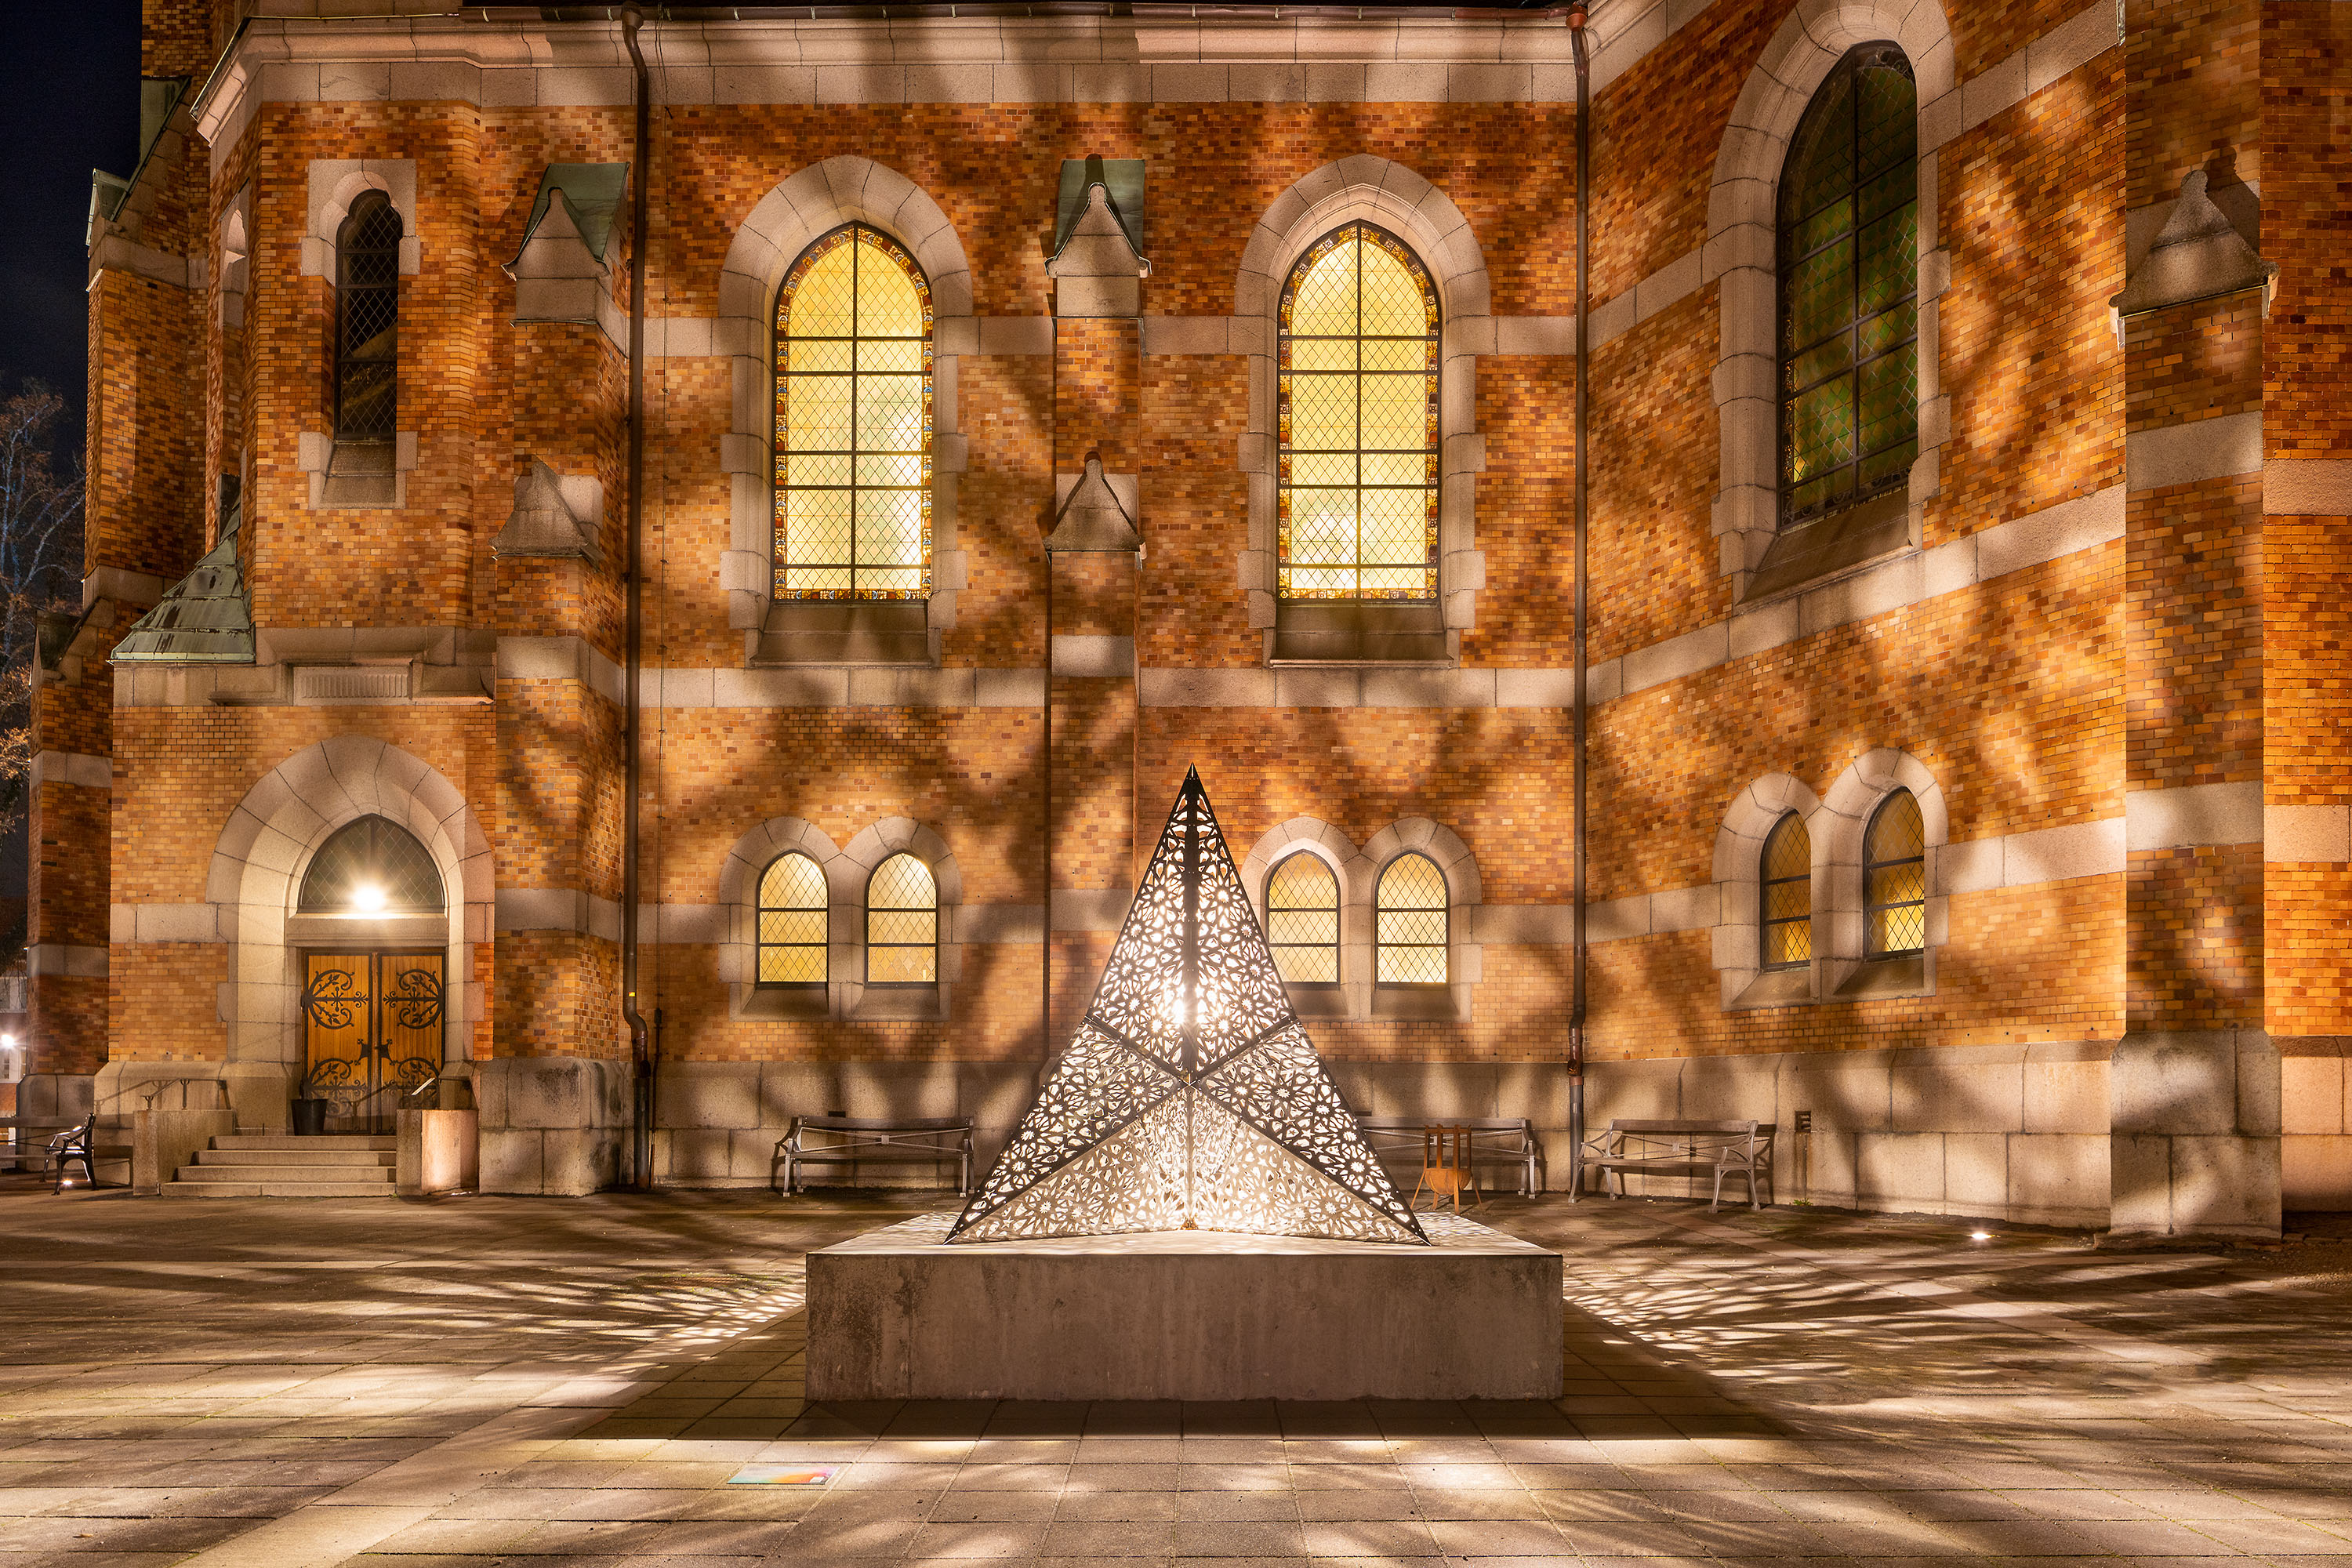 Ljusskulptur i metall med utstansade mönster som kastar mönster i form av skuggor mot en fasad av en kyrka